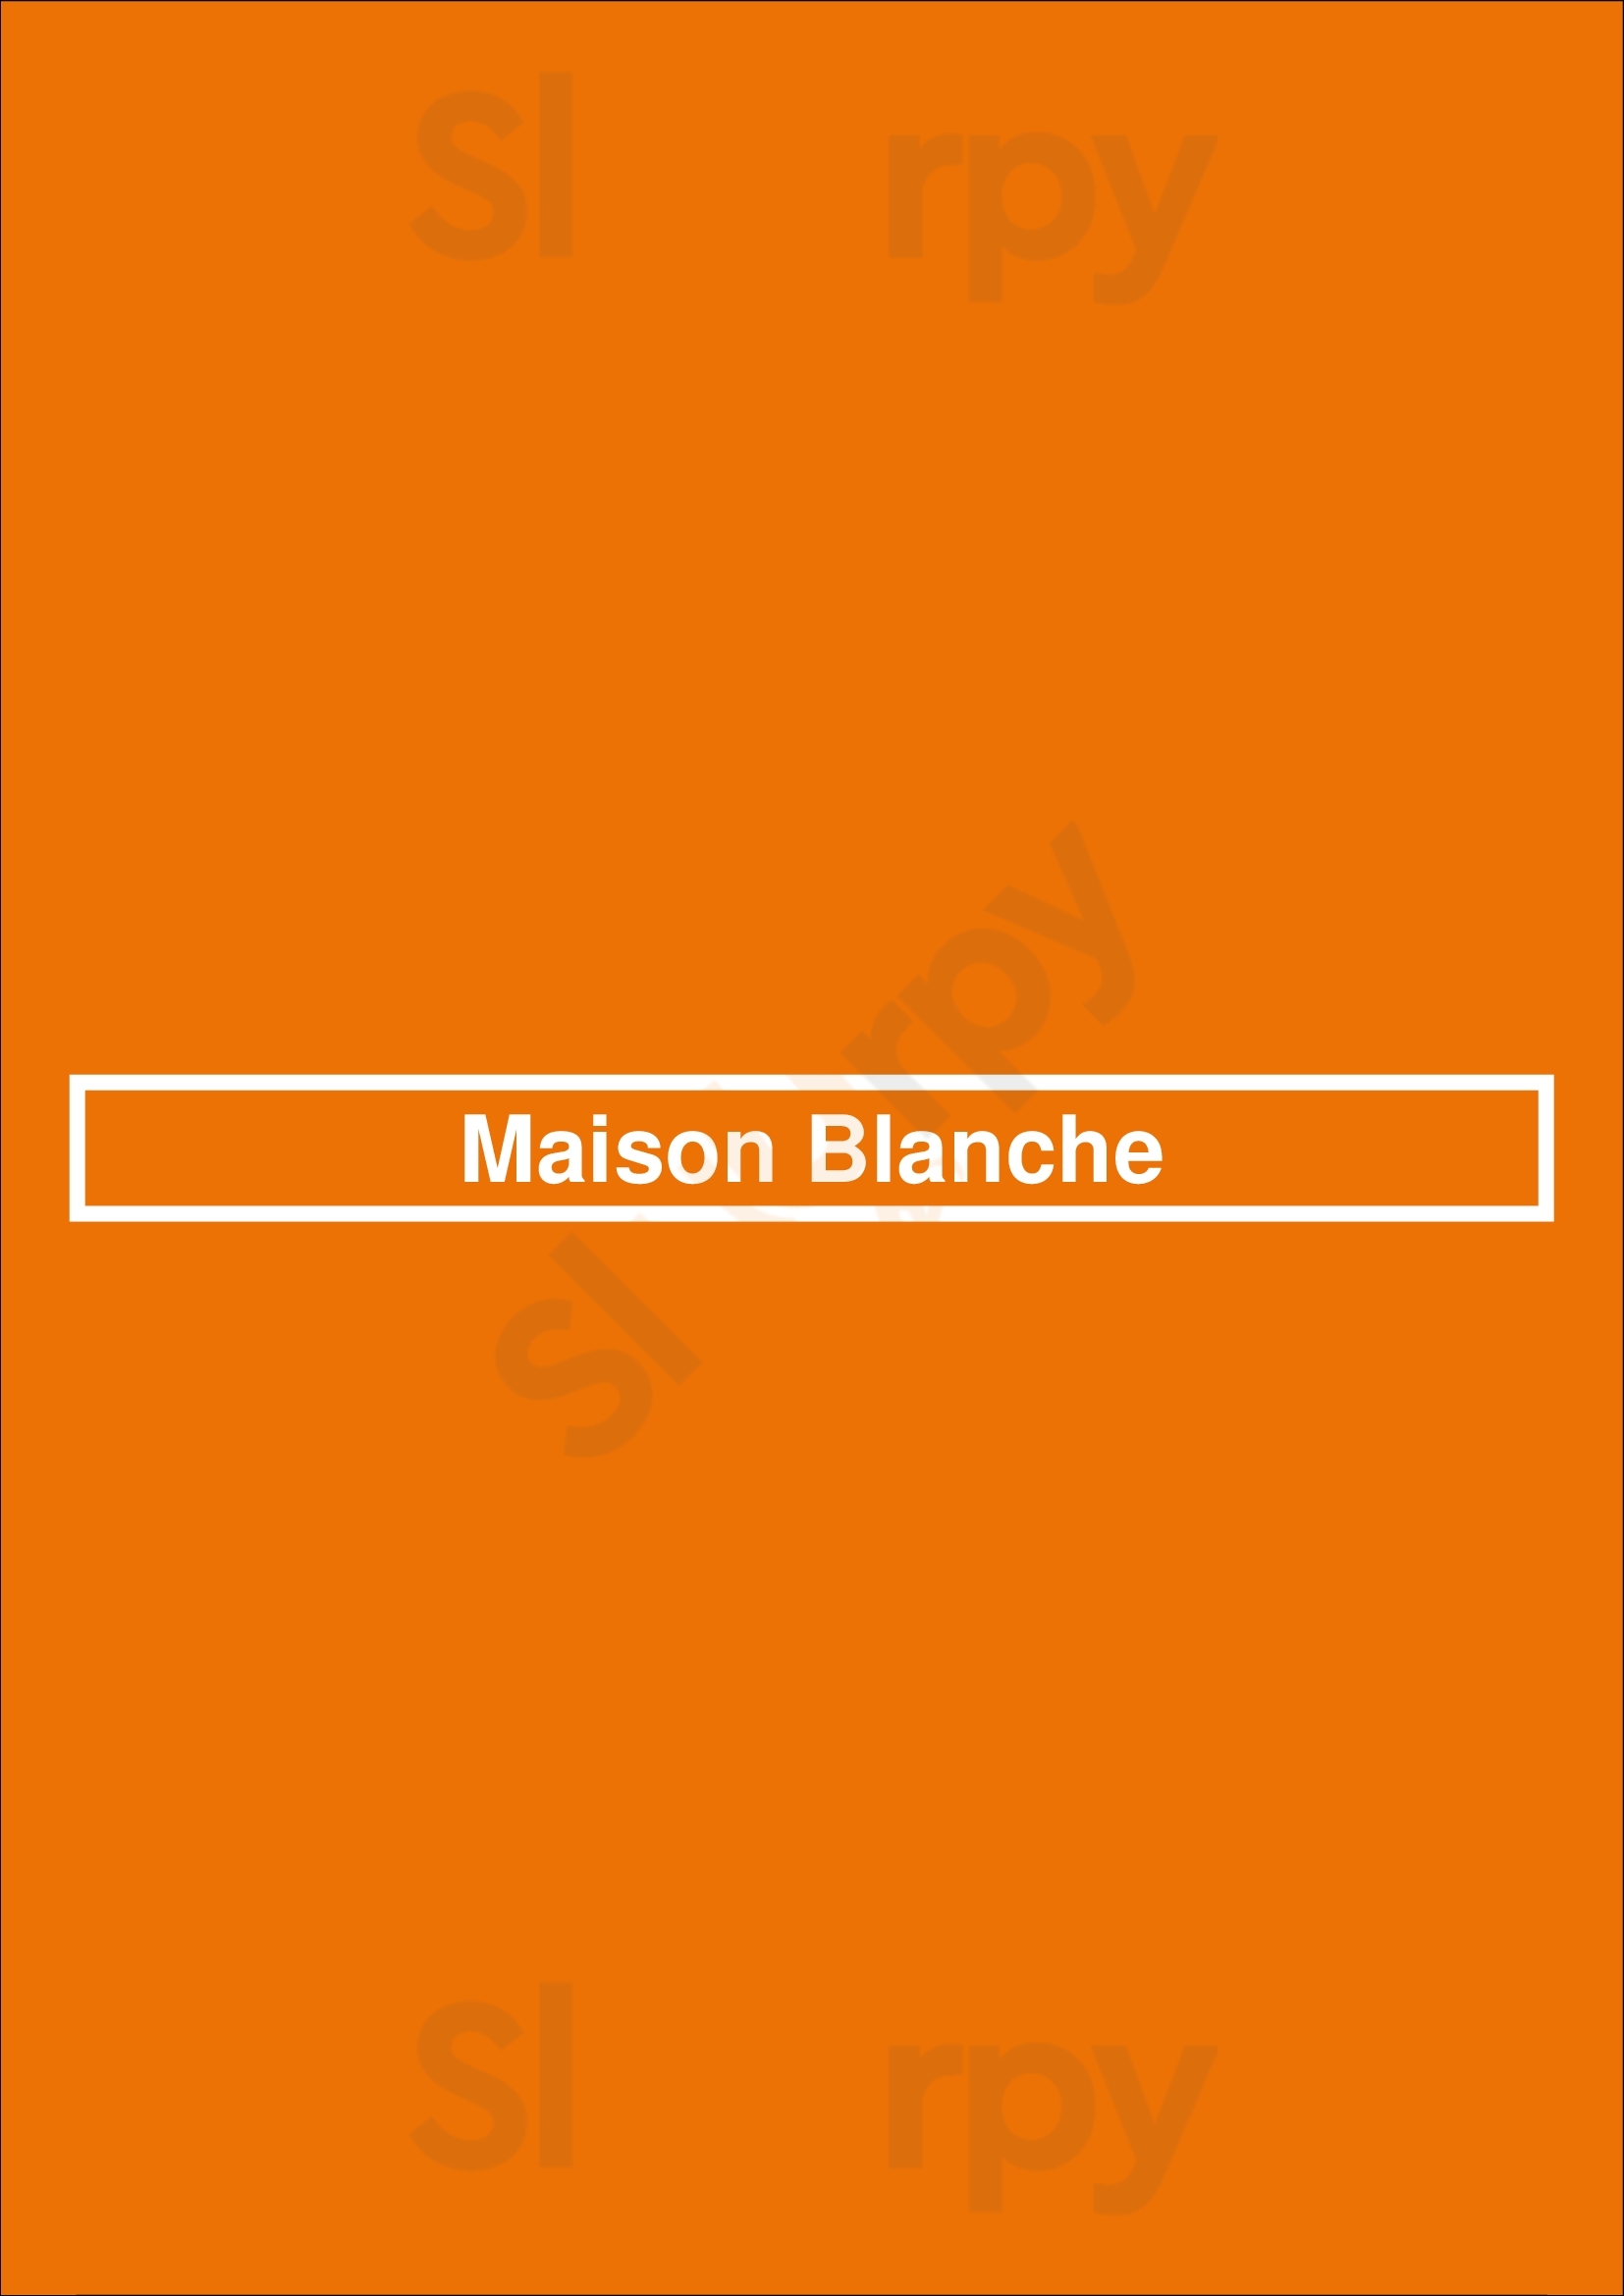 Maison Blanche Paris Menu - 1